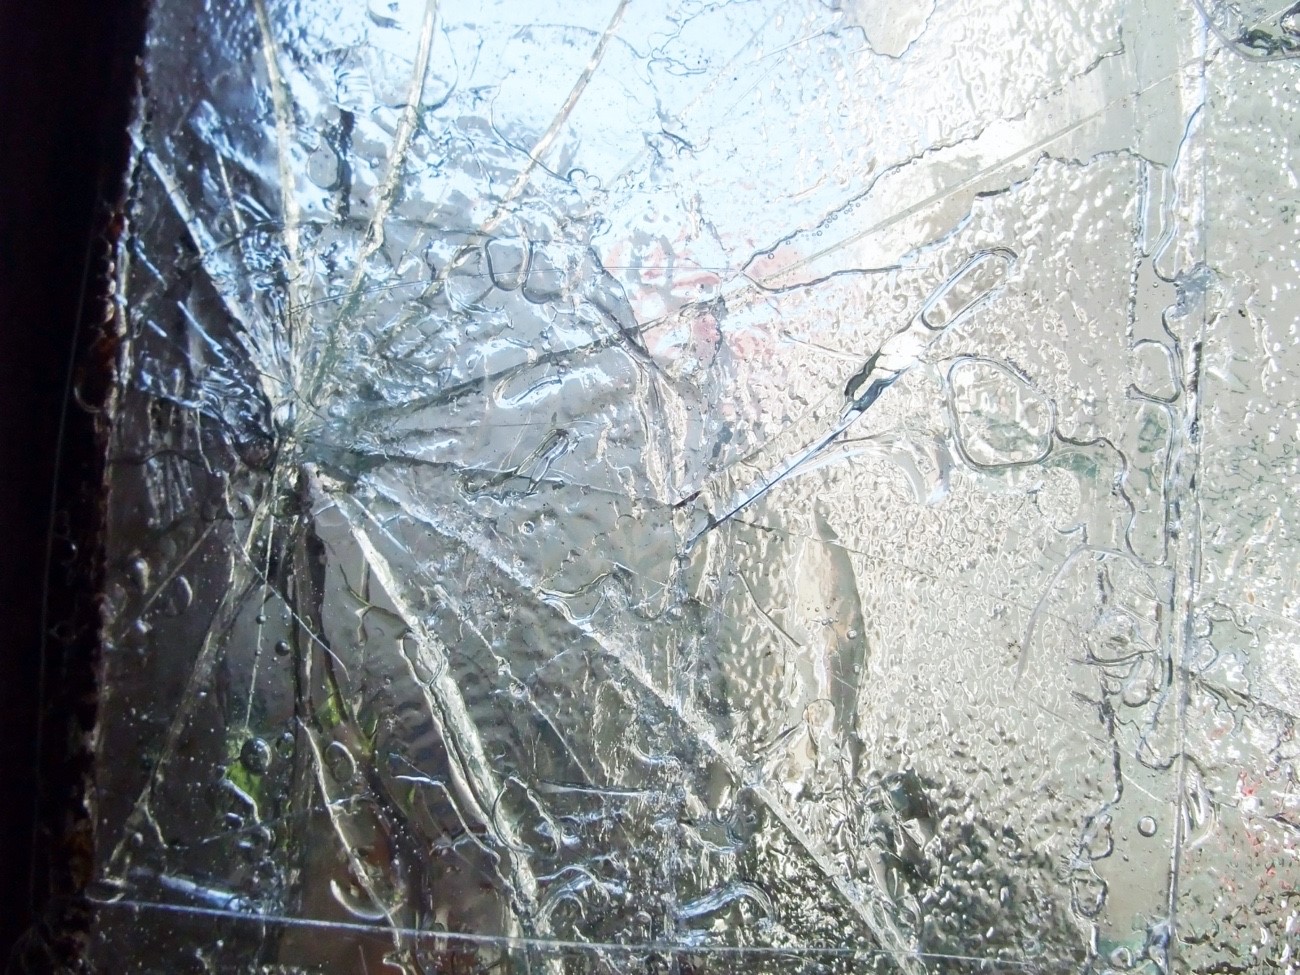 また、窓ガラスの被害も考えられる。雹が窓ガラスに当たり、穴が空いて窓が割れてしまう可能性があり非常に危険である。